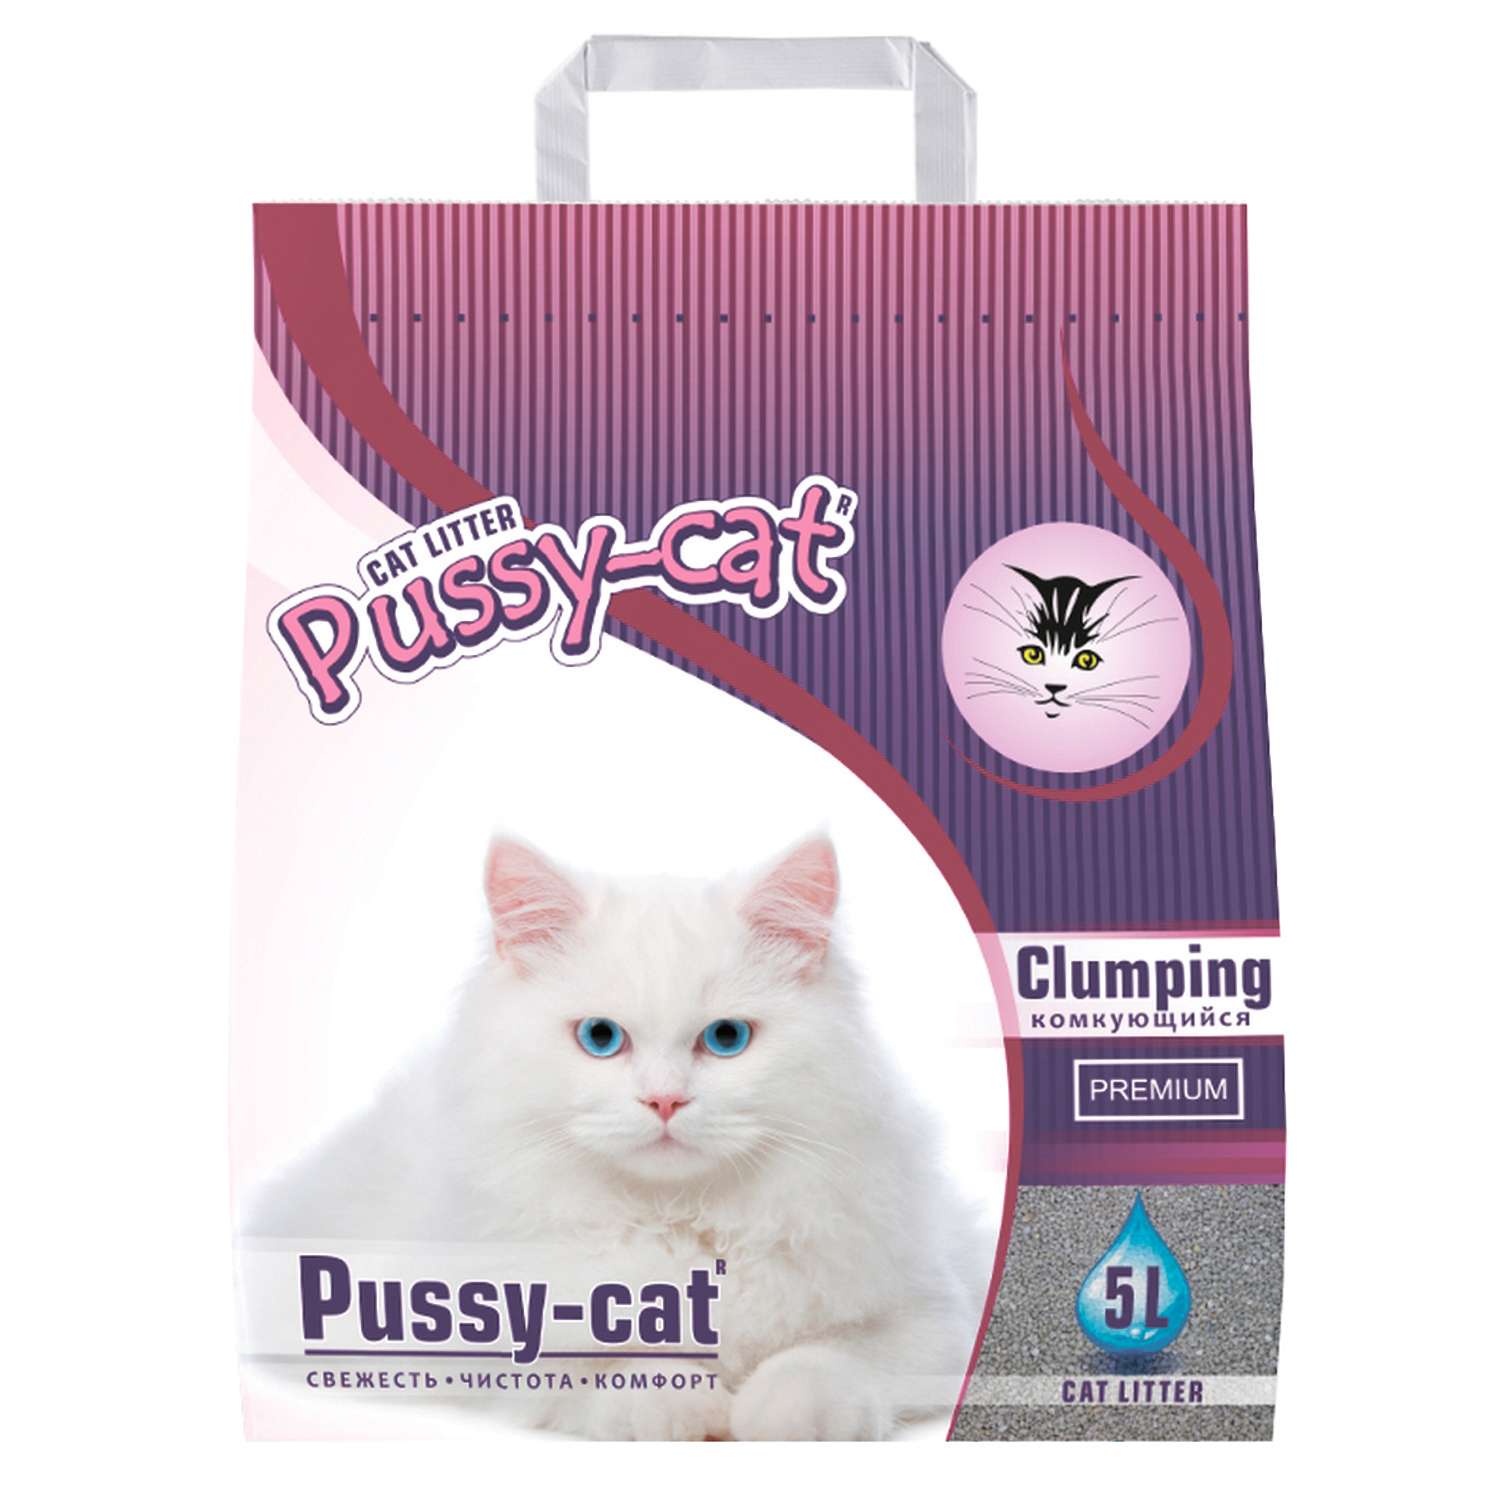 Наполнитель для кошек Pussy Cat Premium Clumping комкующийся 5 л - фото 1